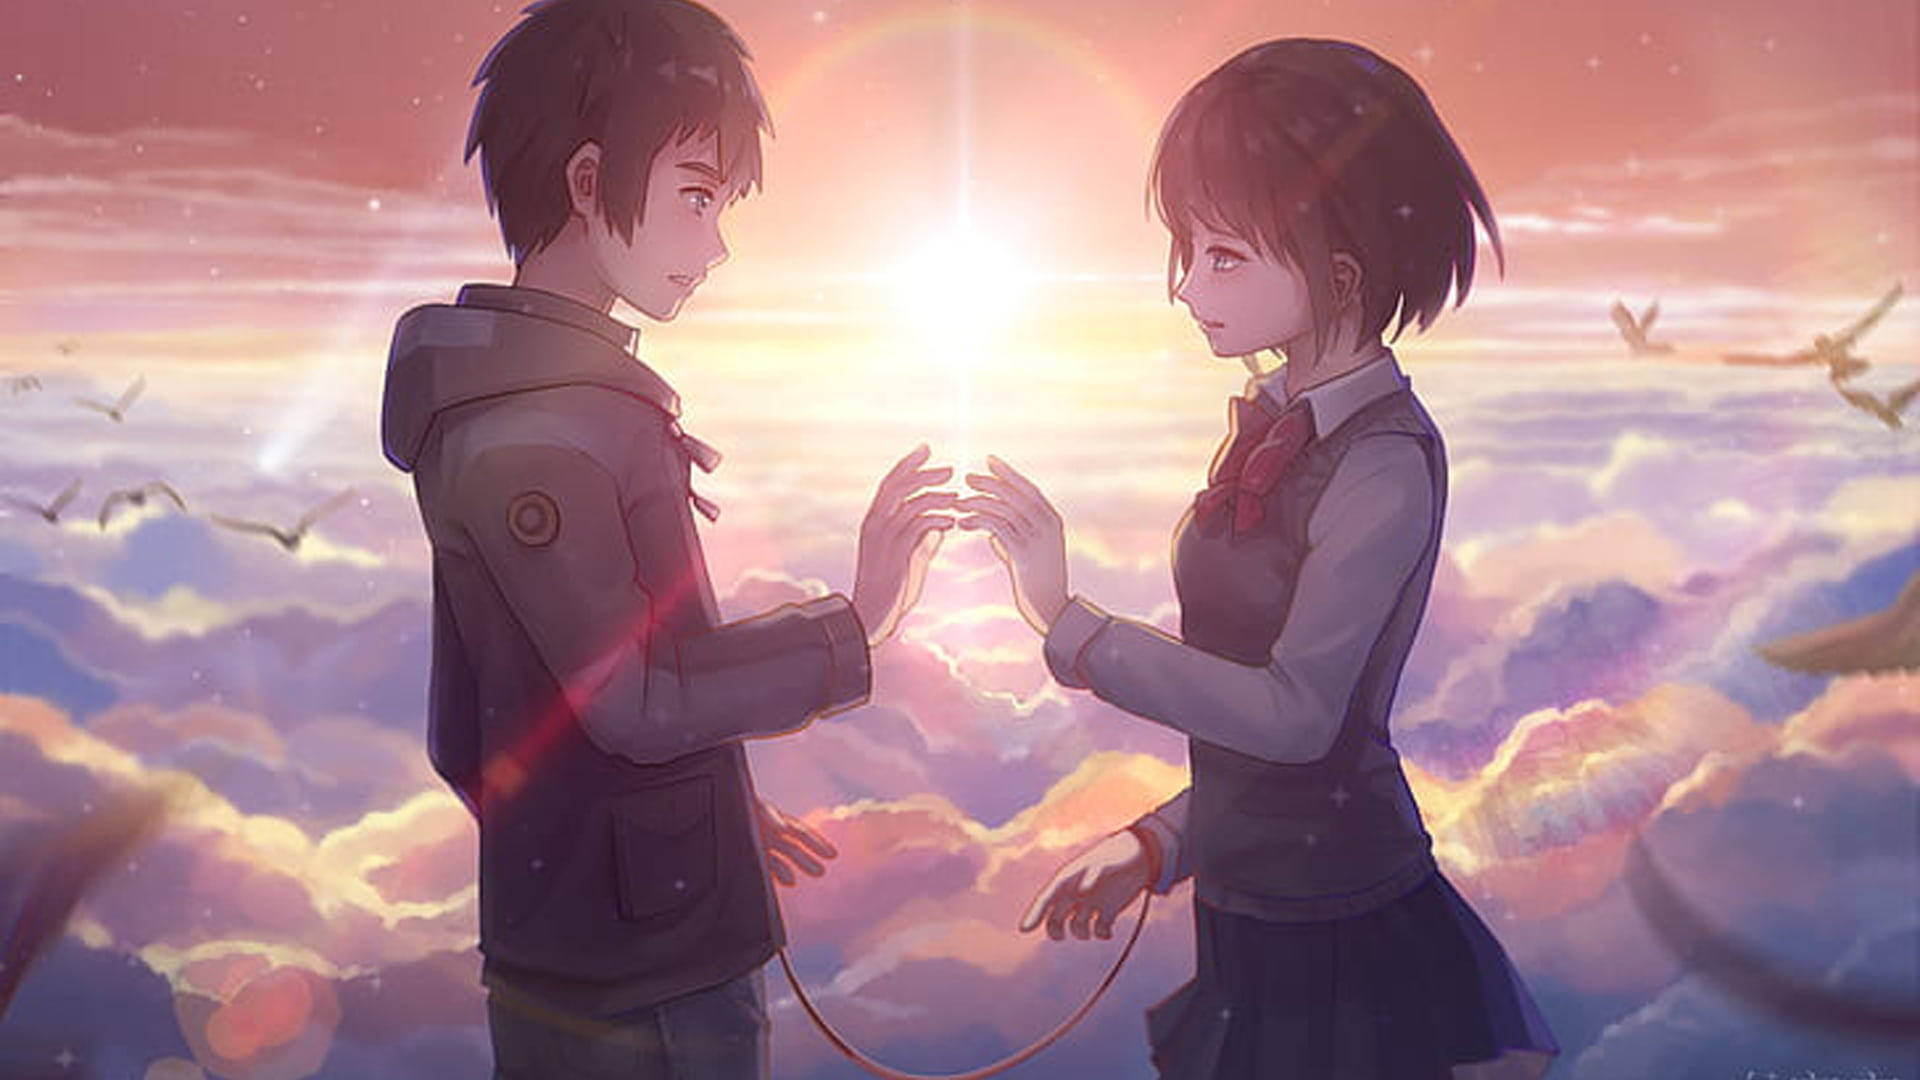 Taki And Mitsuha Aesthetic Anime Couple Background